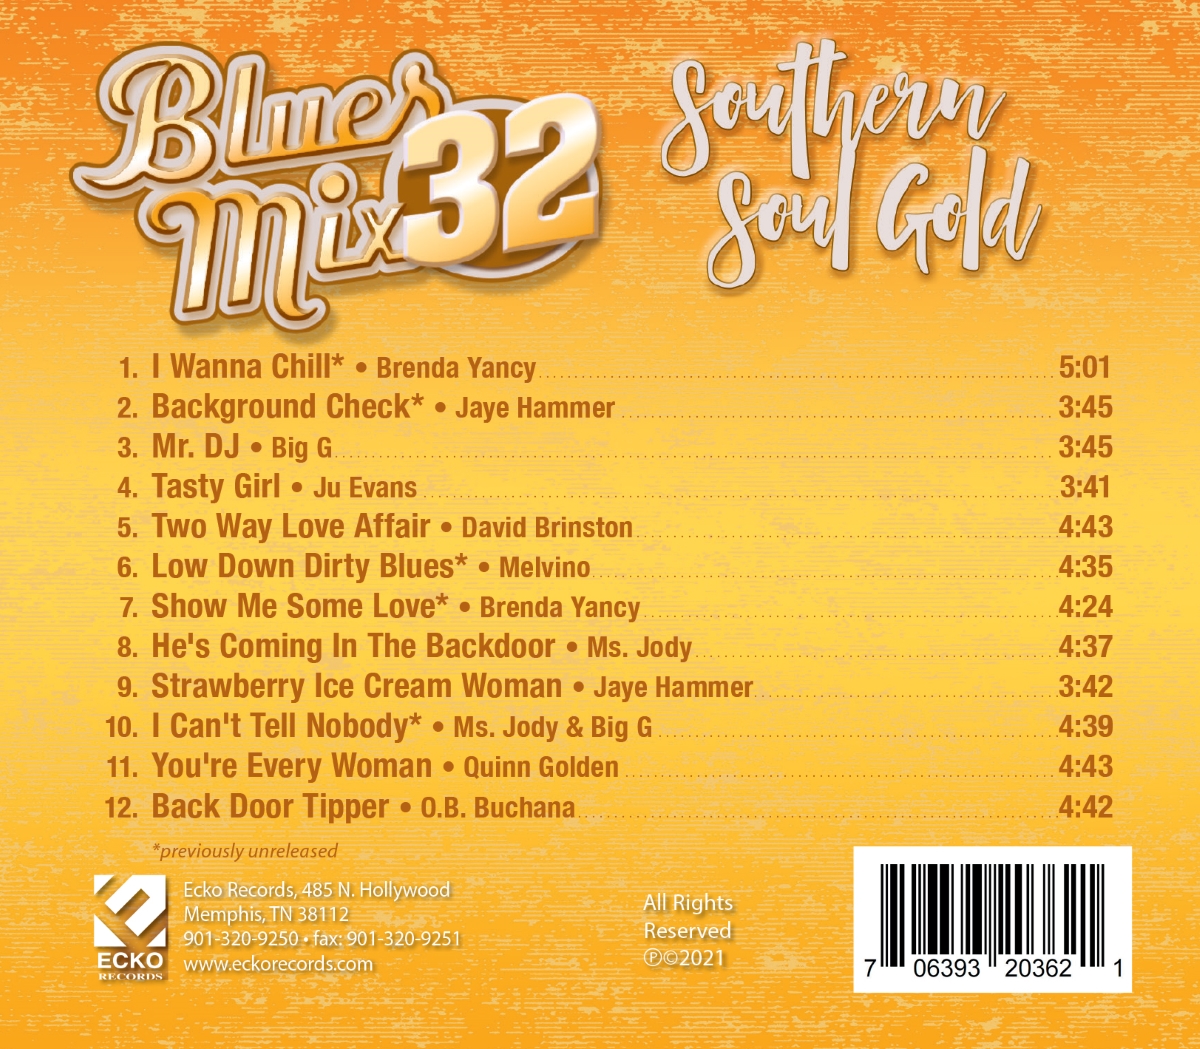 Blues Mix 32-Southern Soul Gold